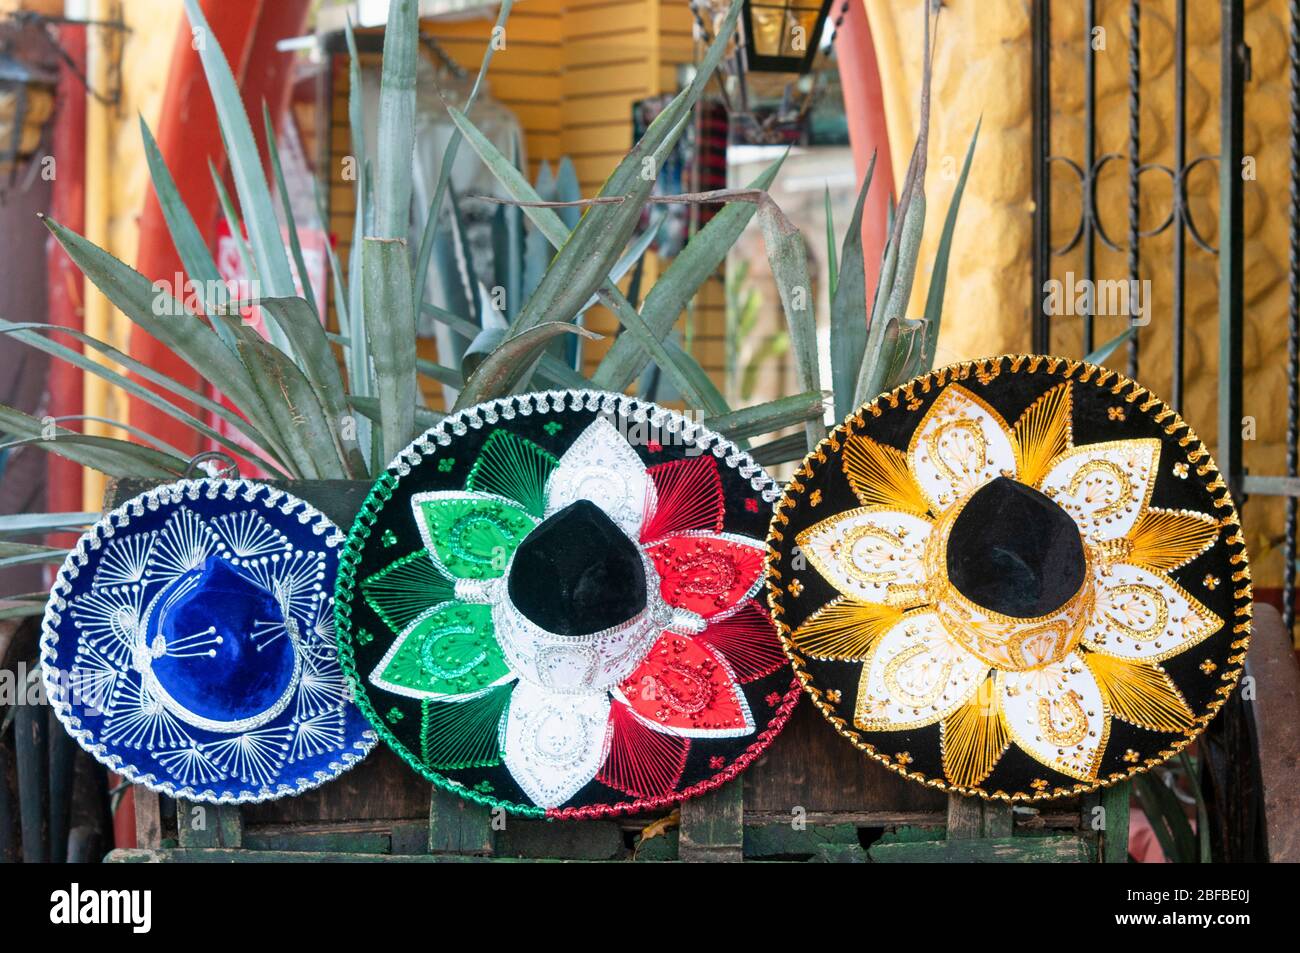 Sombreros mexicains au premier plan. Le sombrero mexicain est un article en grande demande par les touristes du monde entier Banque D'Images